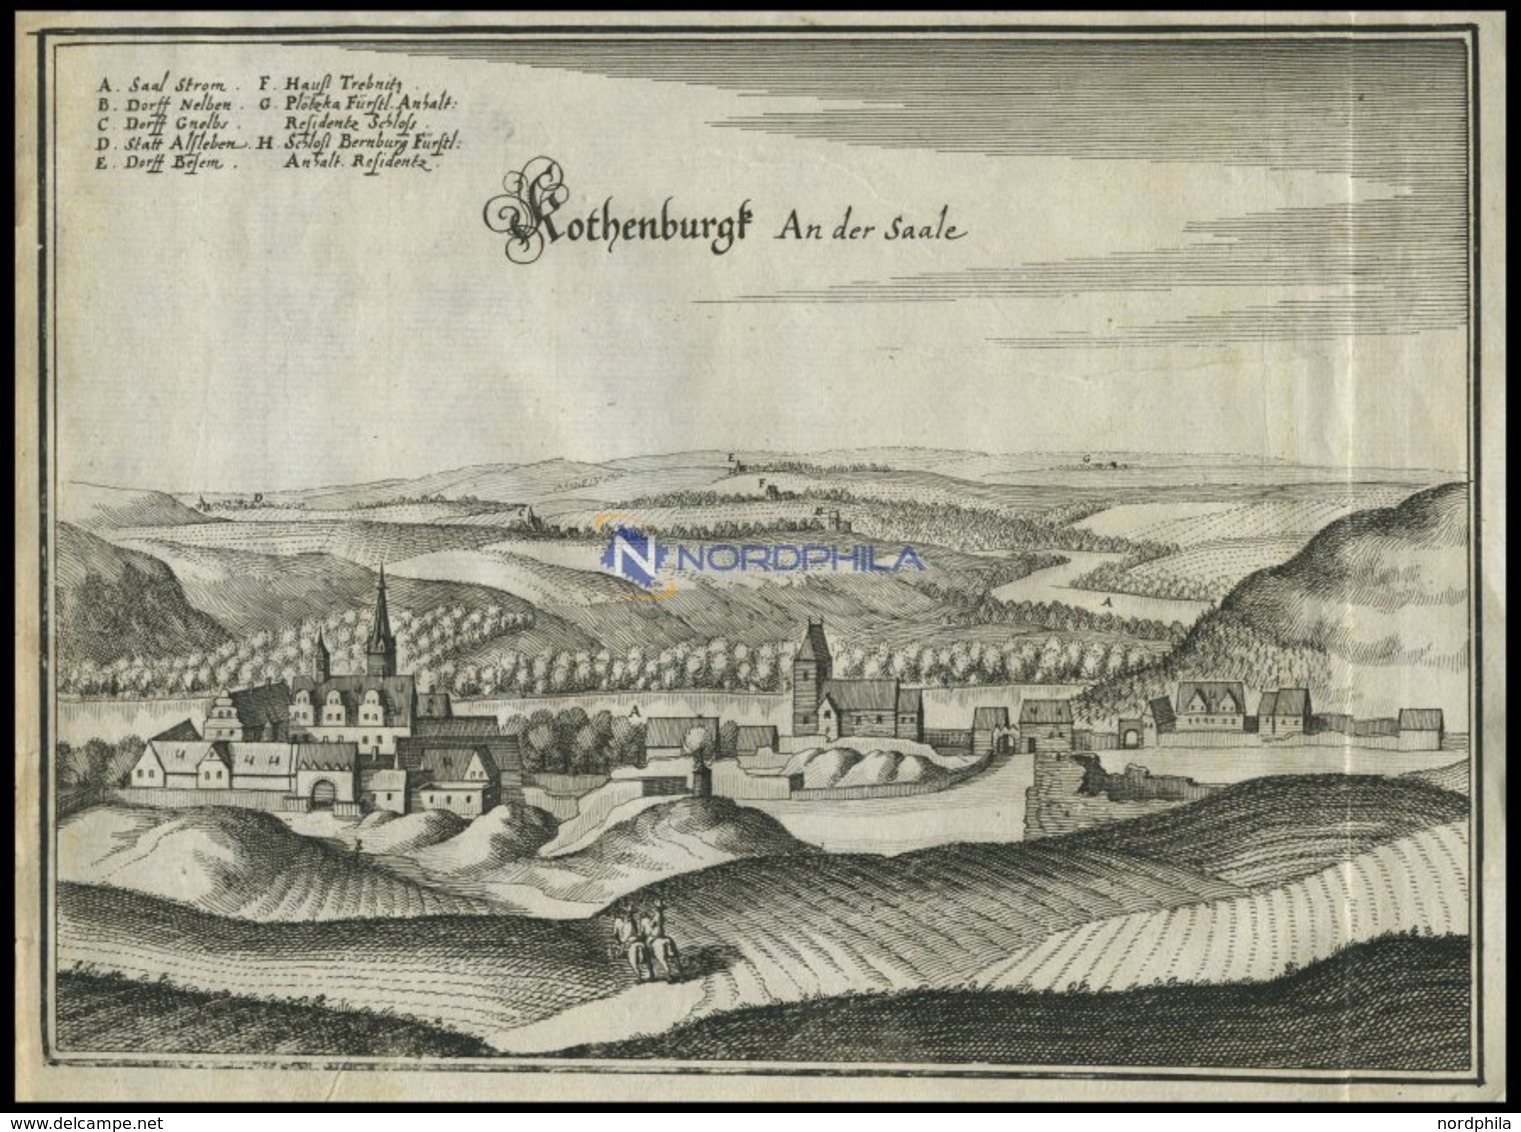 ROTHENBURG An Der SAALE, Gesamtansicht, Kupferstich Von Merian Um 1645 - Lithographien